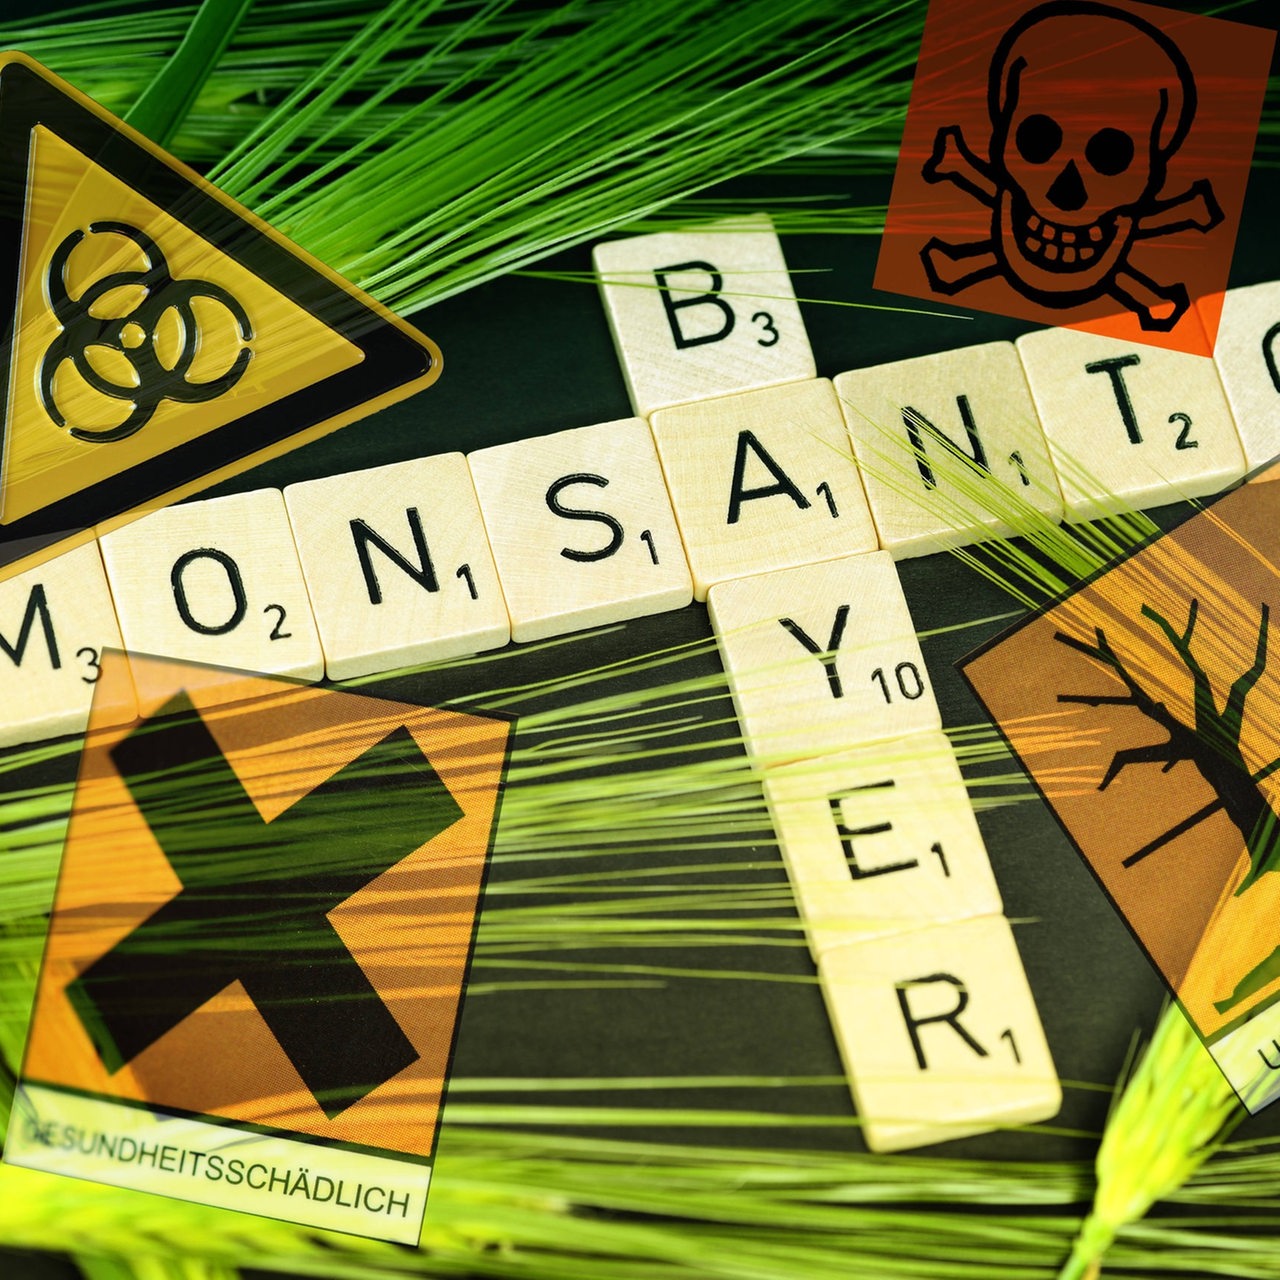 Schriftzug "Bayer" und "Monsanto" umgeben von Warnschildern